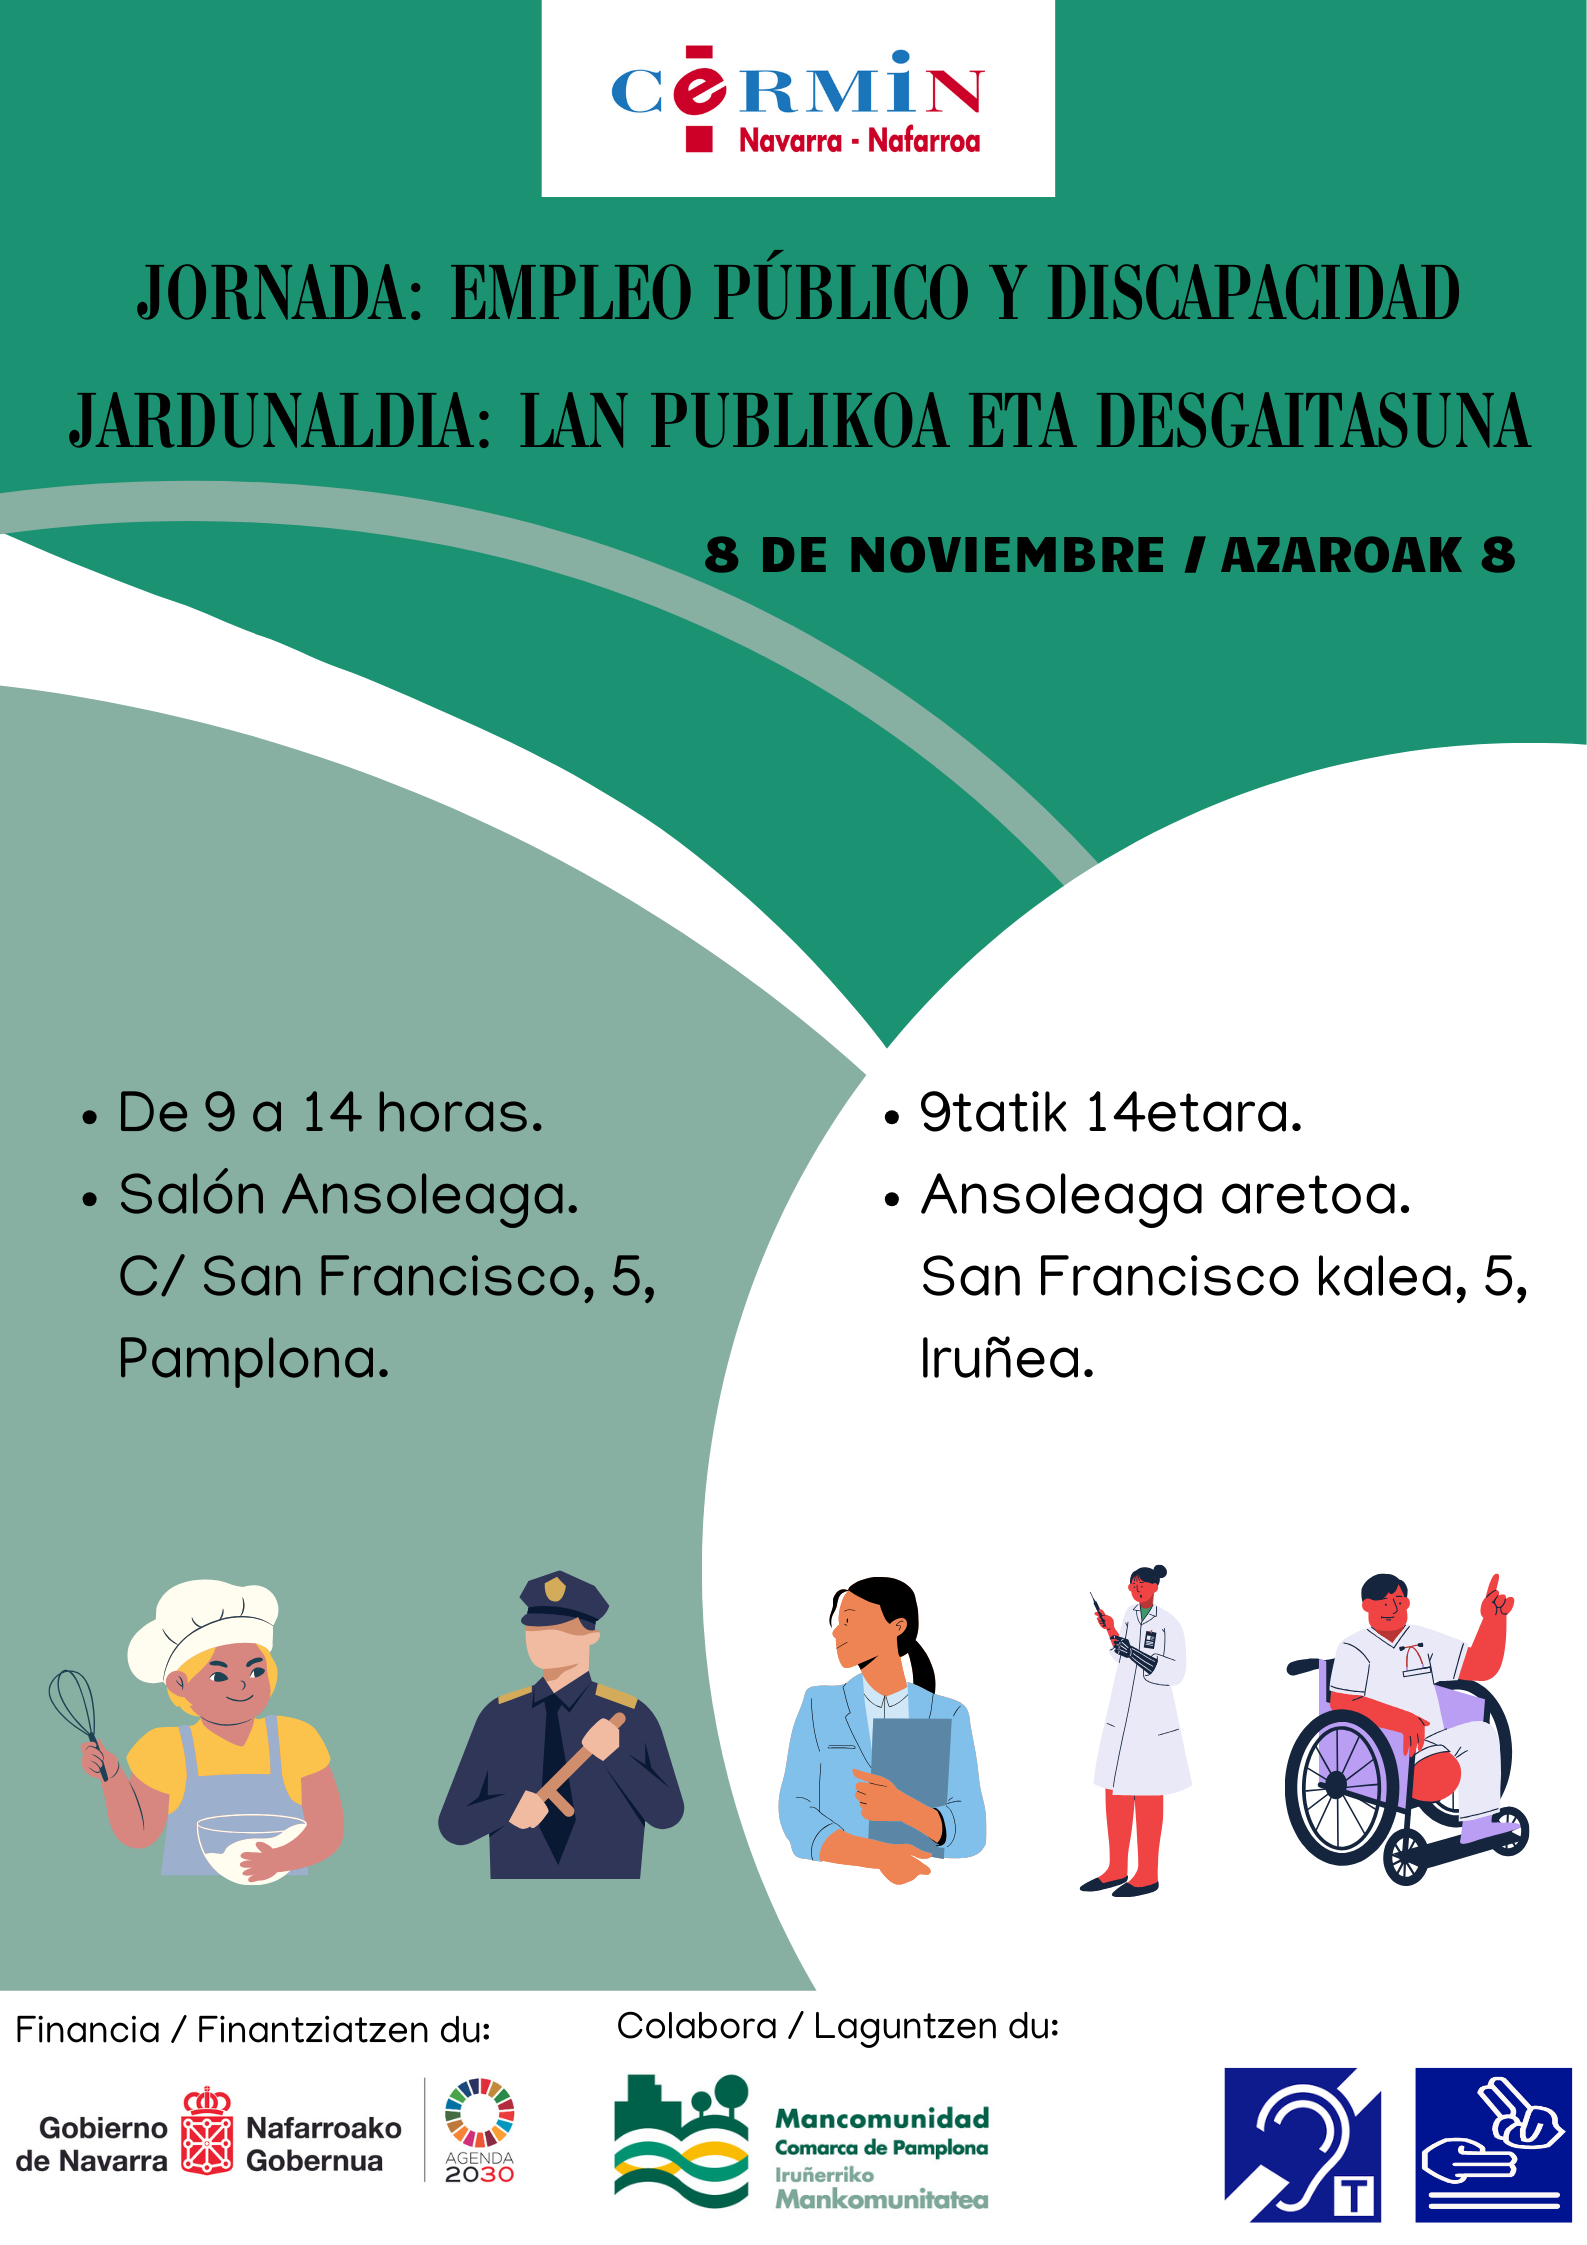 Jornada Empleo Público y Discapacidad. 8 de noviembre. Salón Ansoleaga. Calle San Francisco 5 de Pamplona. Cartel Jornada